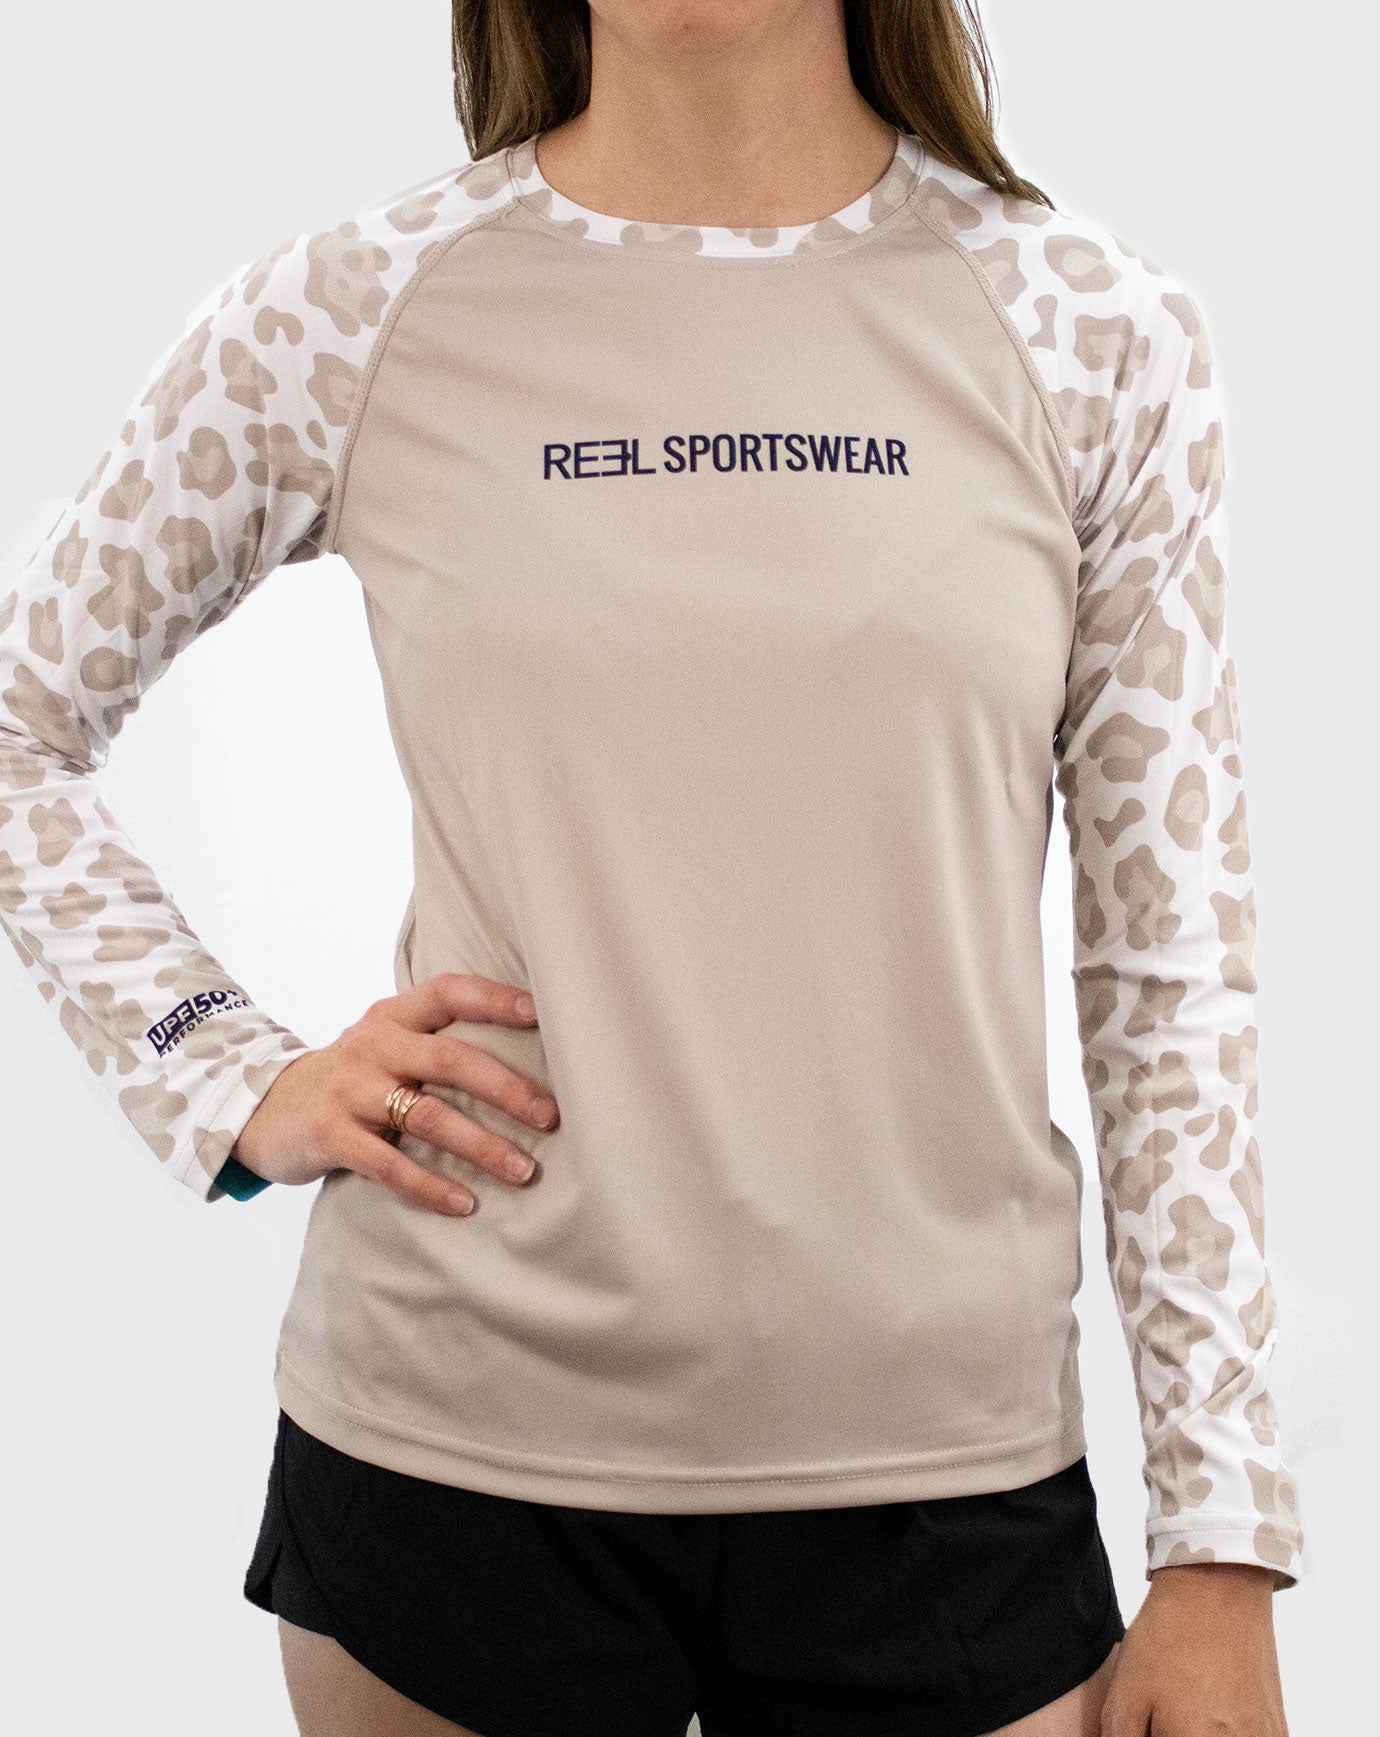 Up River  Navy - Reel Sportswear